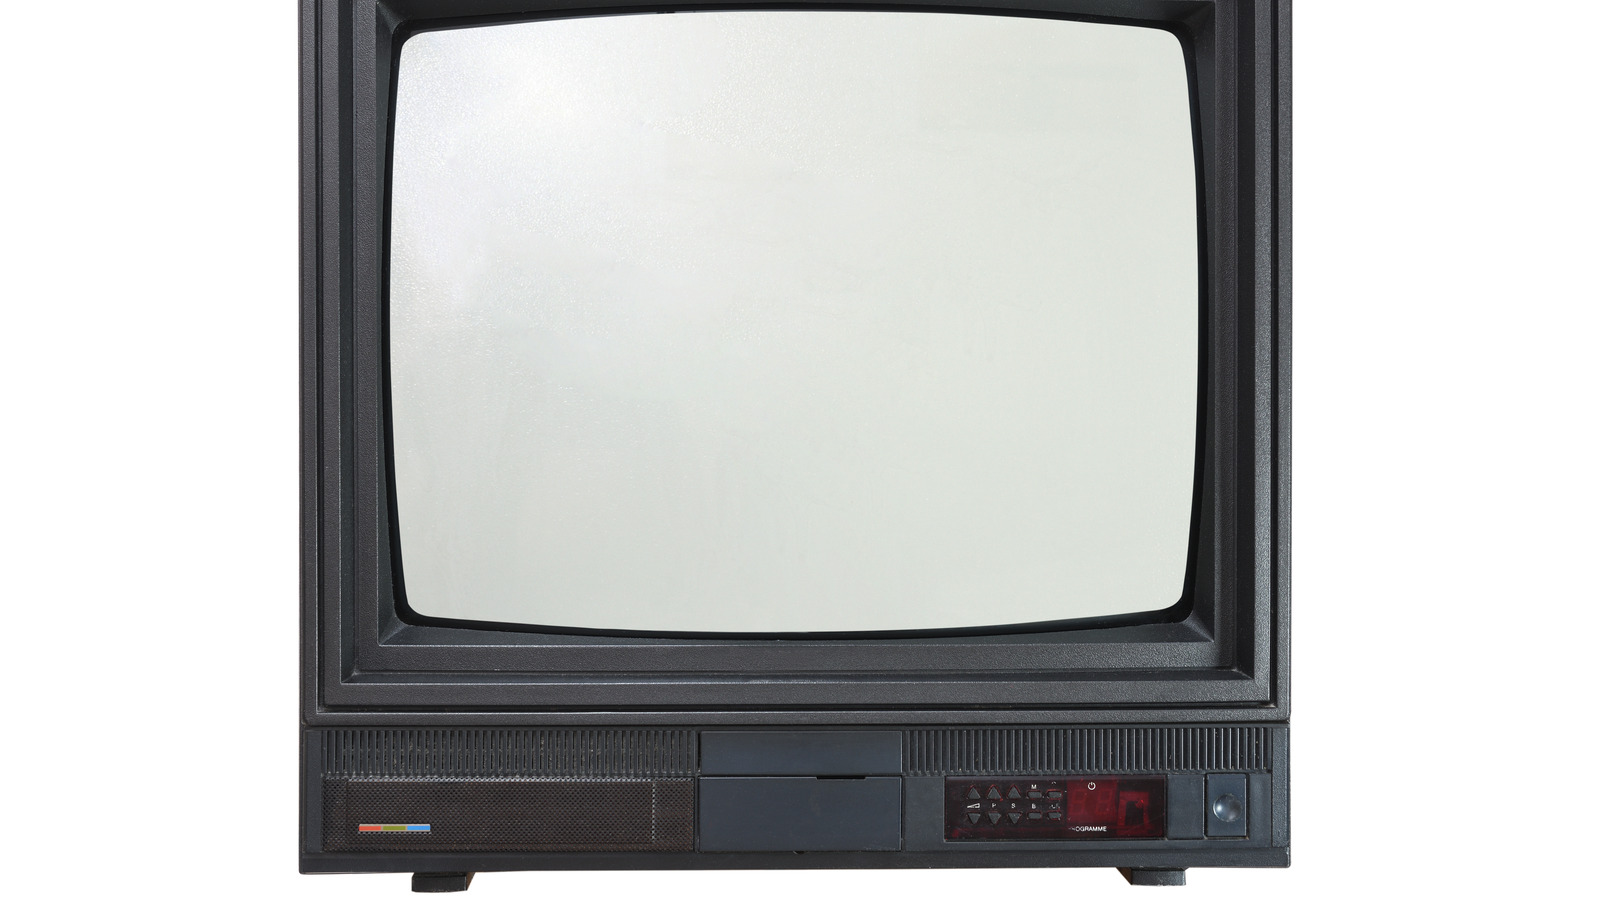 Důvod, proč jsou CRT televizory zastaralé, je z velké části způsoben